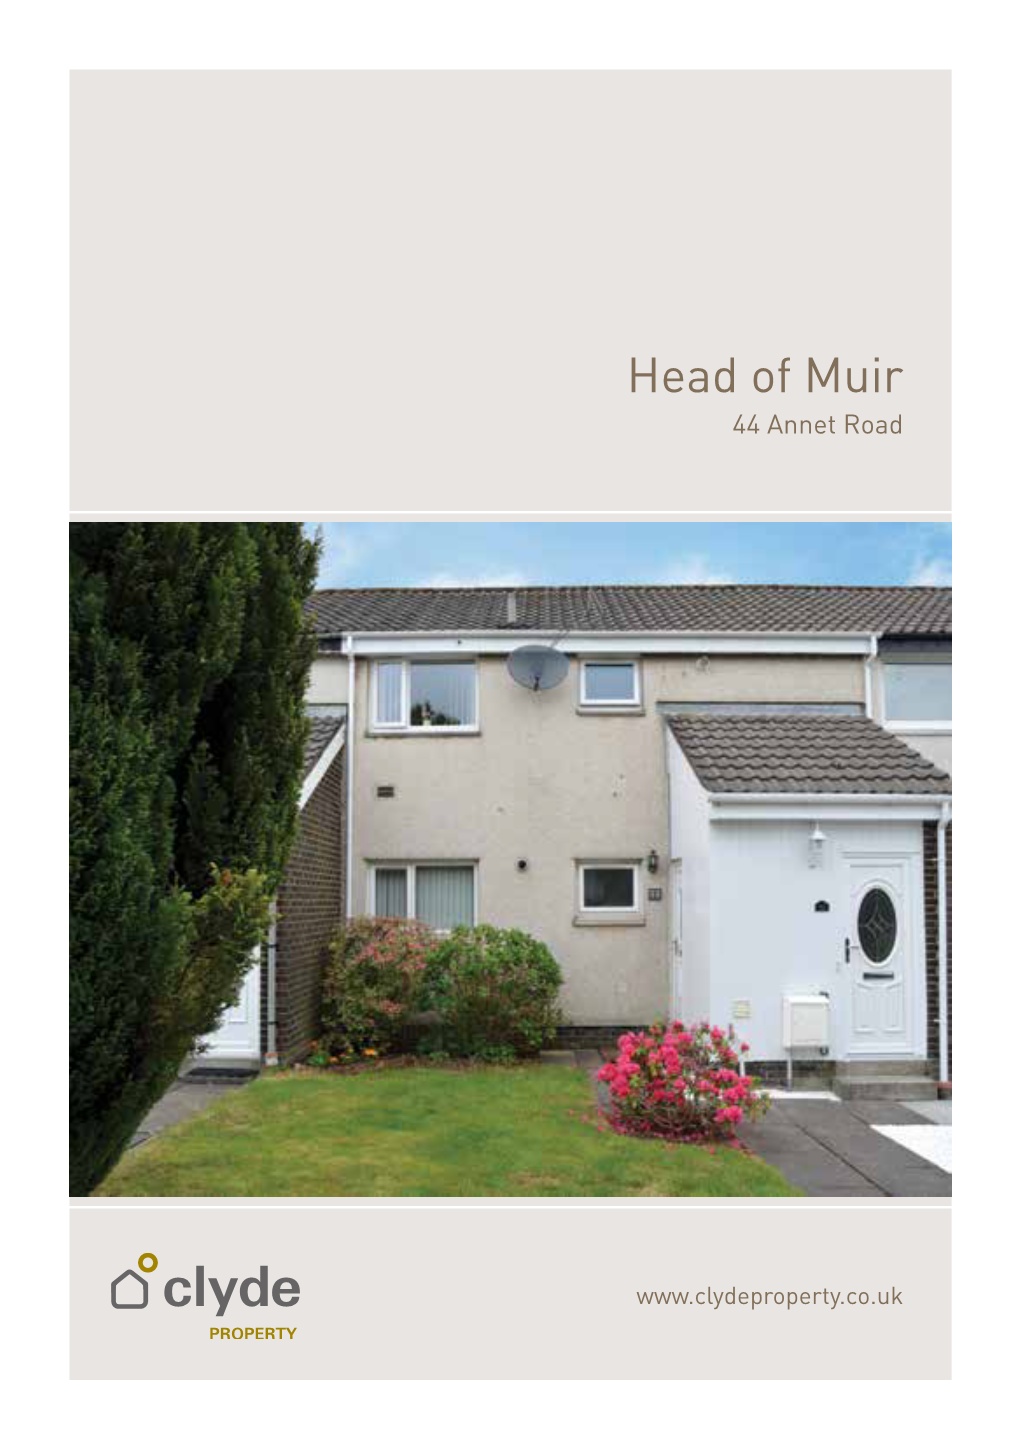 Head of Muir 44 Annet Road